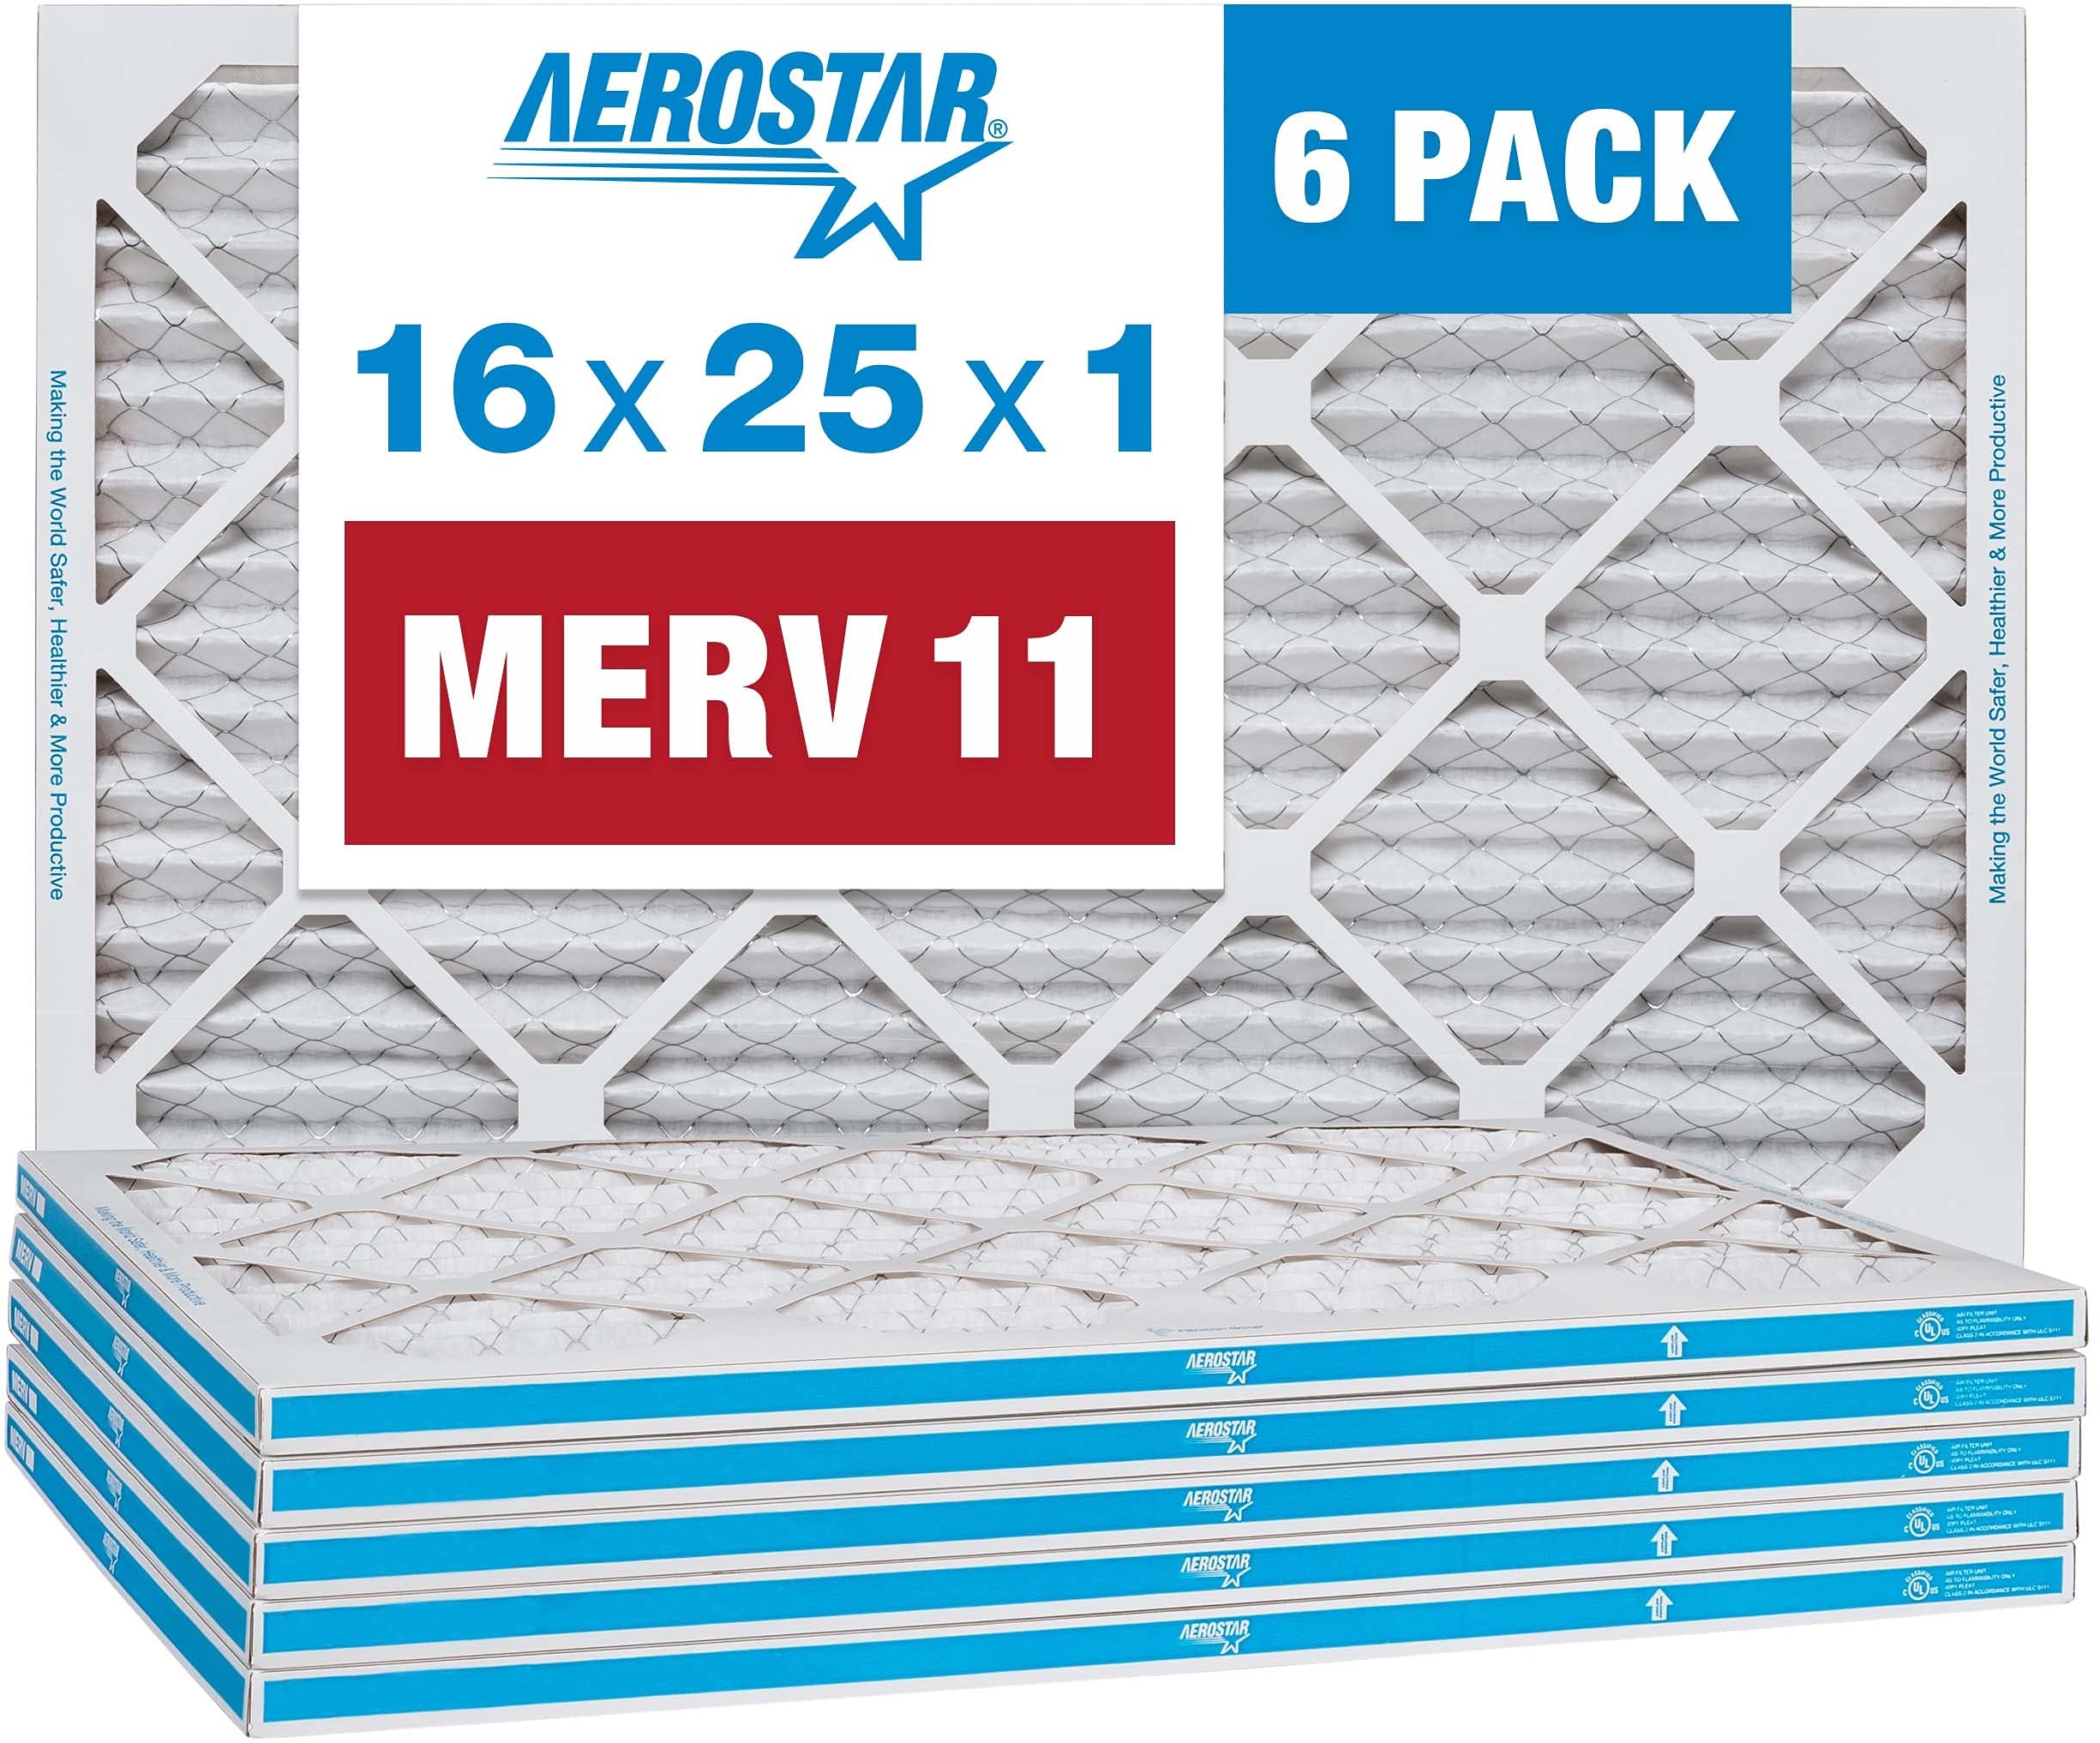 Aerostar 16 x 25 x 1 MERV 11 Plissee-Luftfilter, AC-Ofen-Luftfilter, 6 Stück (tatsächliche Größe: 39,5 x 61,4 x 1,9 cm)